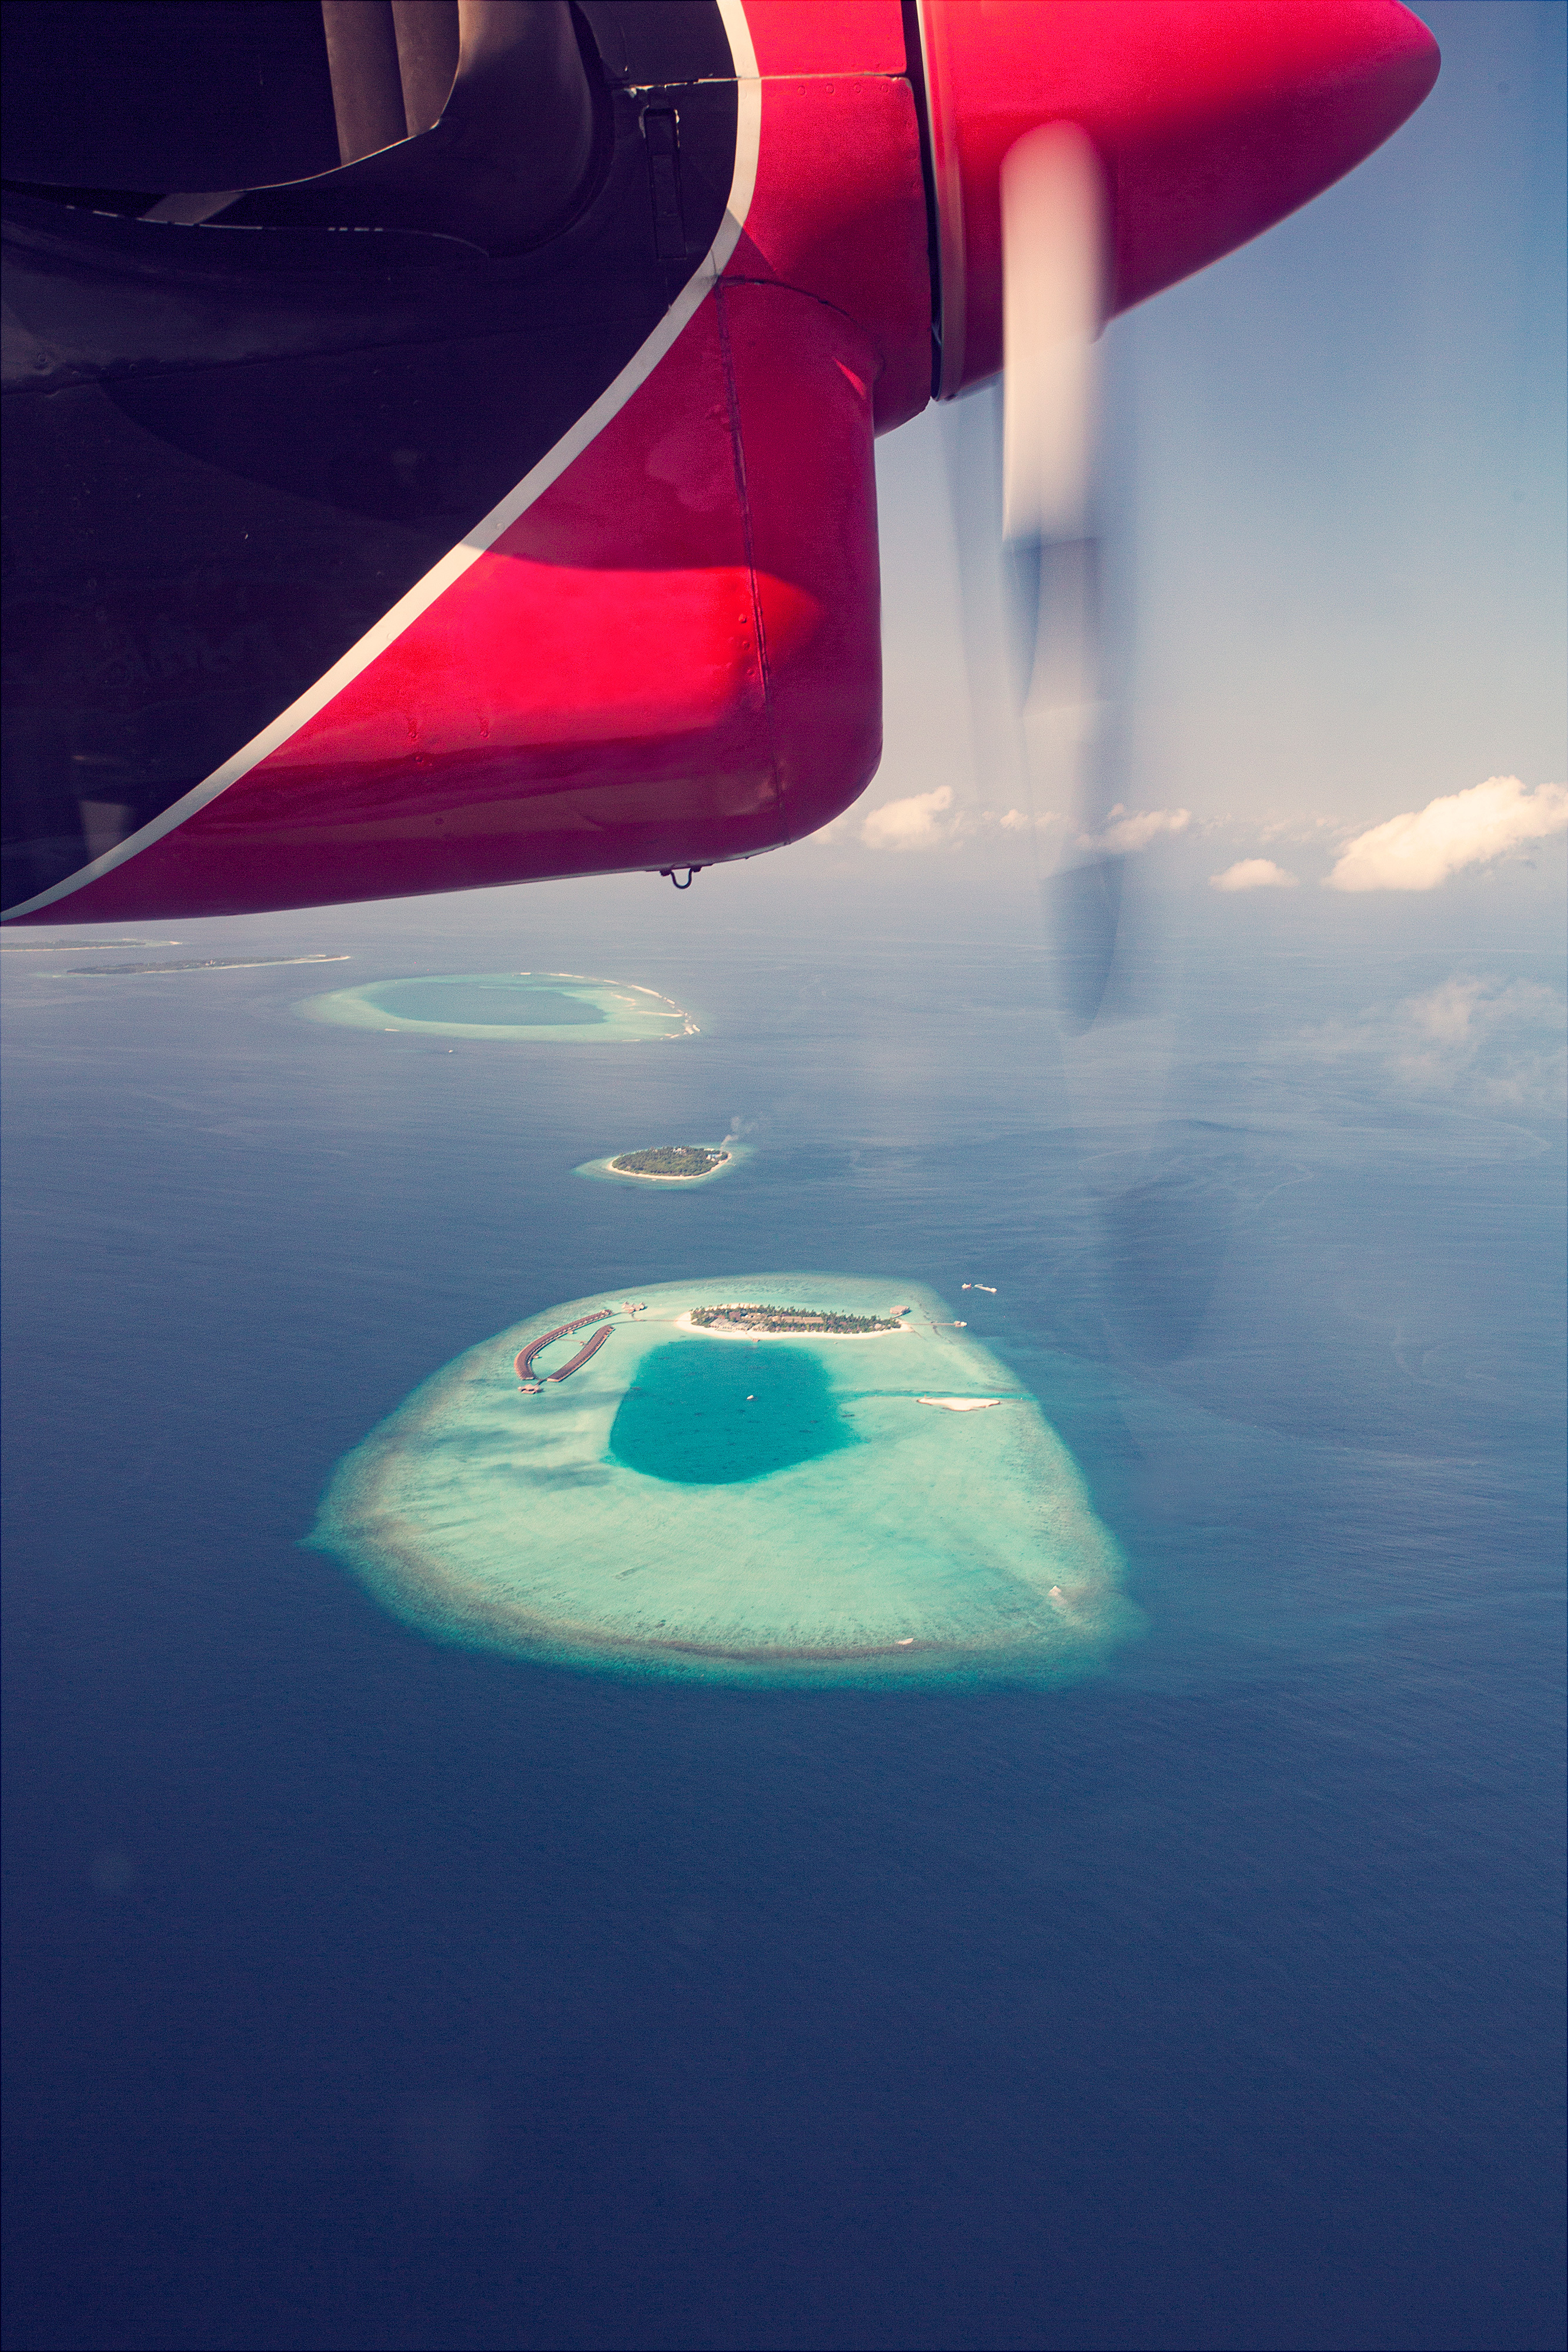 The standard huruvalhi maldives